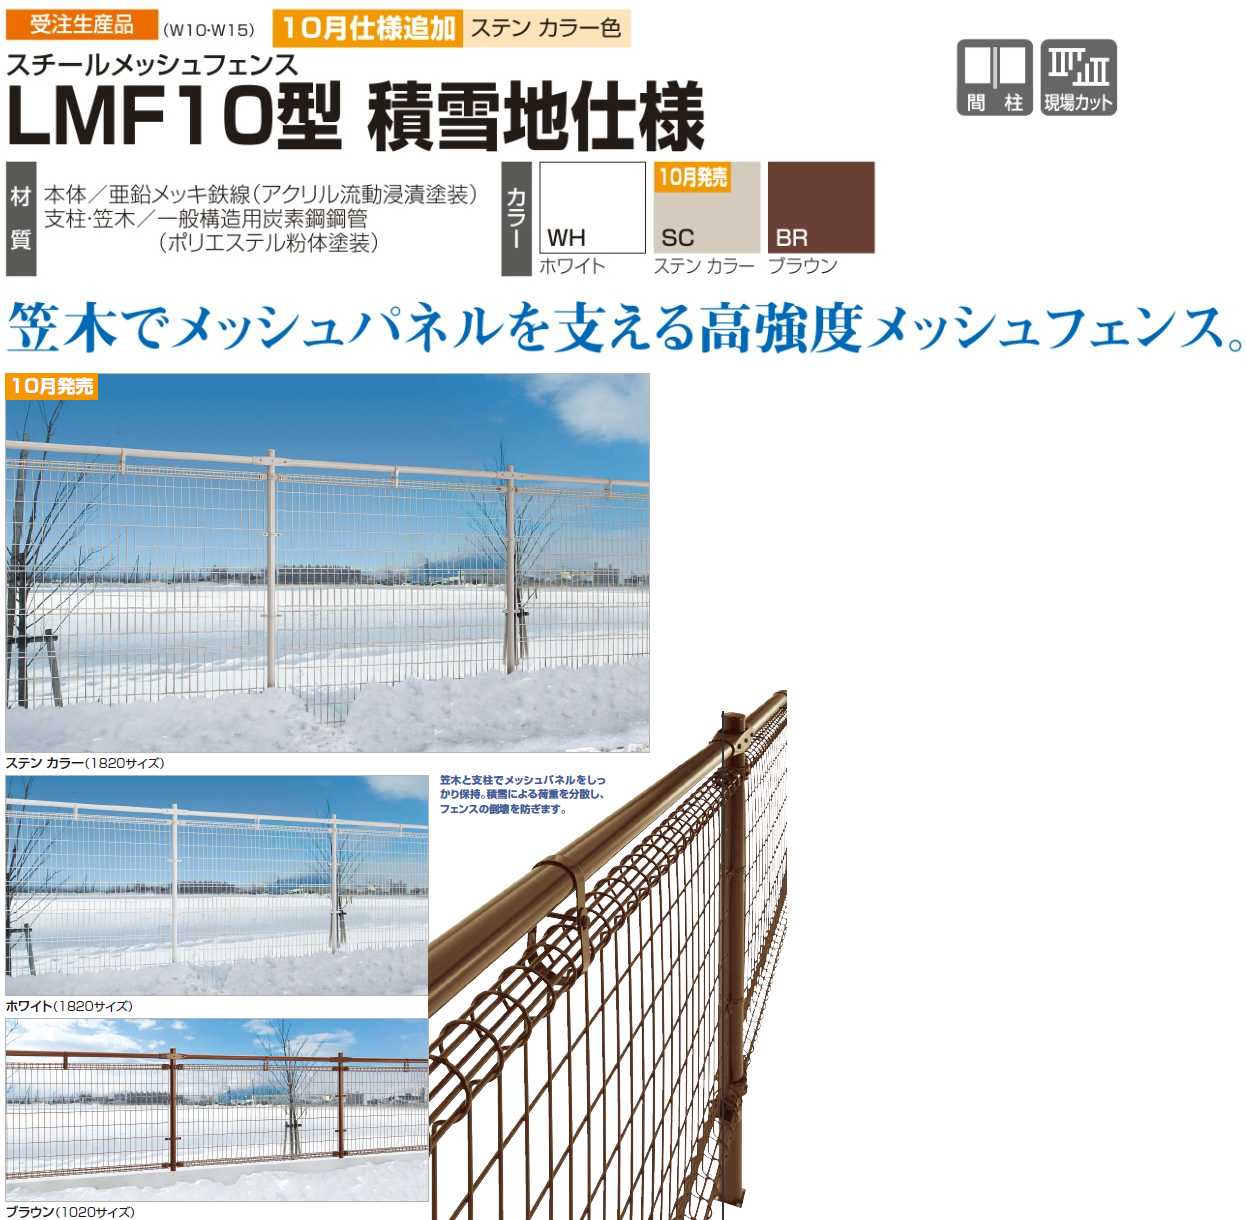 四国化成 スチールメッシュフェンス LMF10型 積雪地仕様 送料無料でお届け致します。